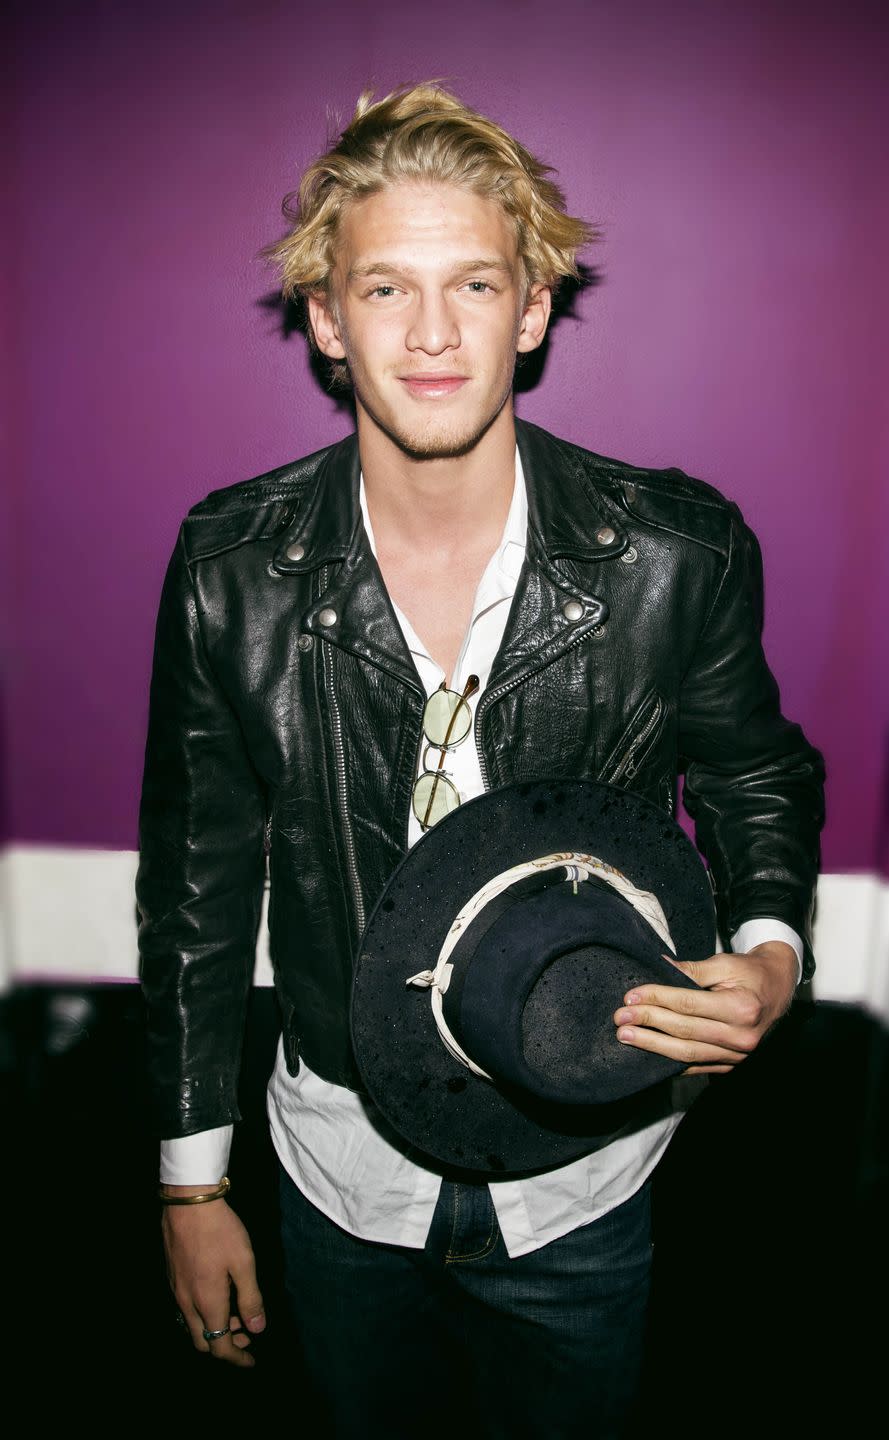 49) Cody Simpson: Then